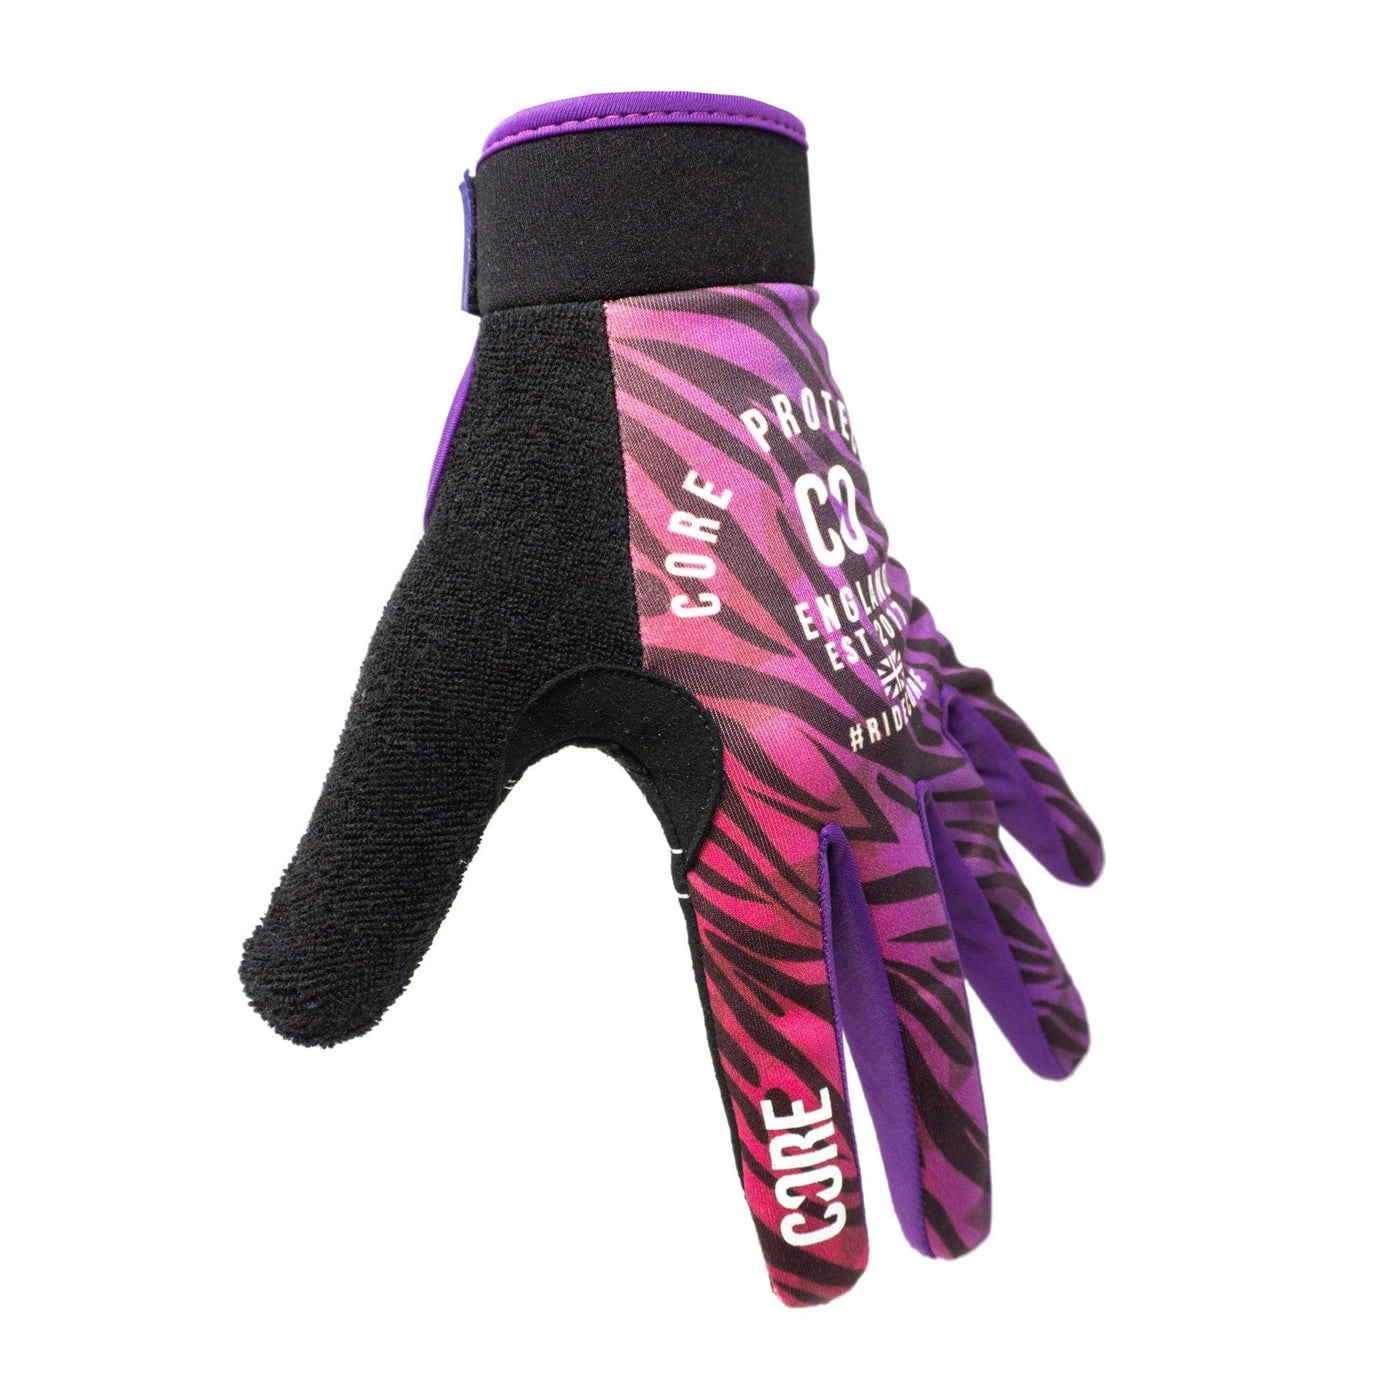 CORE Protection BMX Gloves SR Zonky I Bike Gloves Side